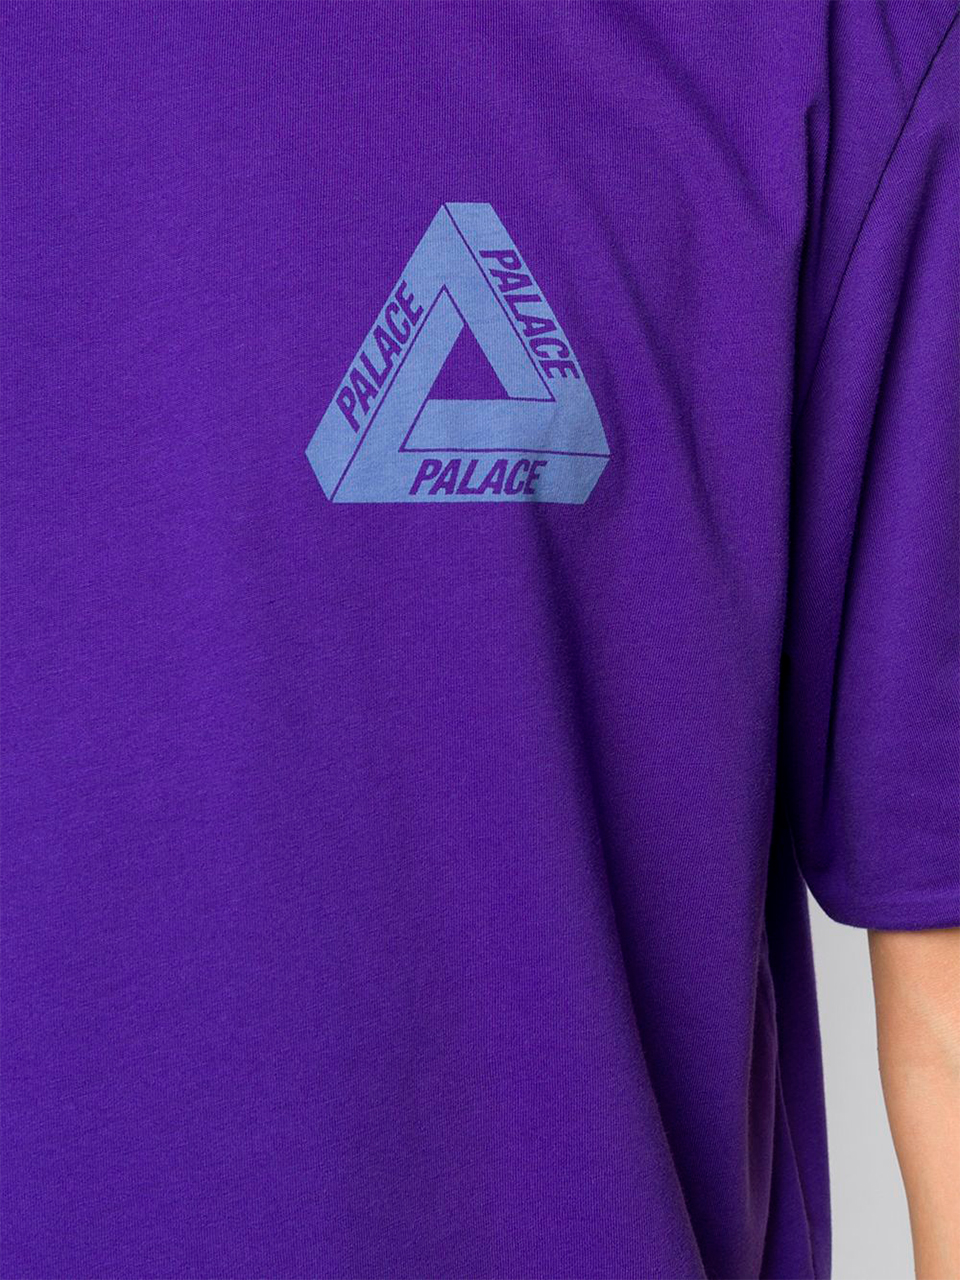 Imagem de: Camiseta Palace Roxa com Logo